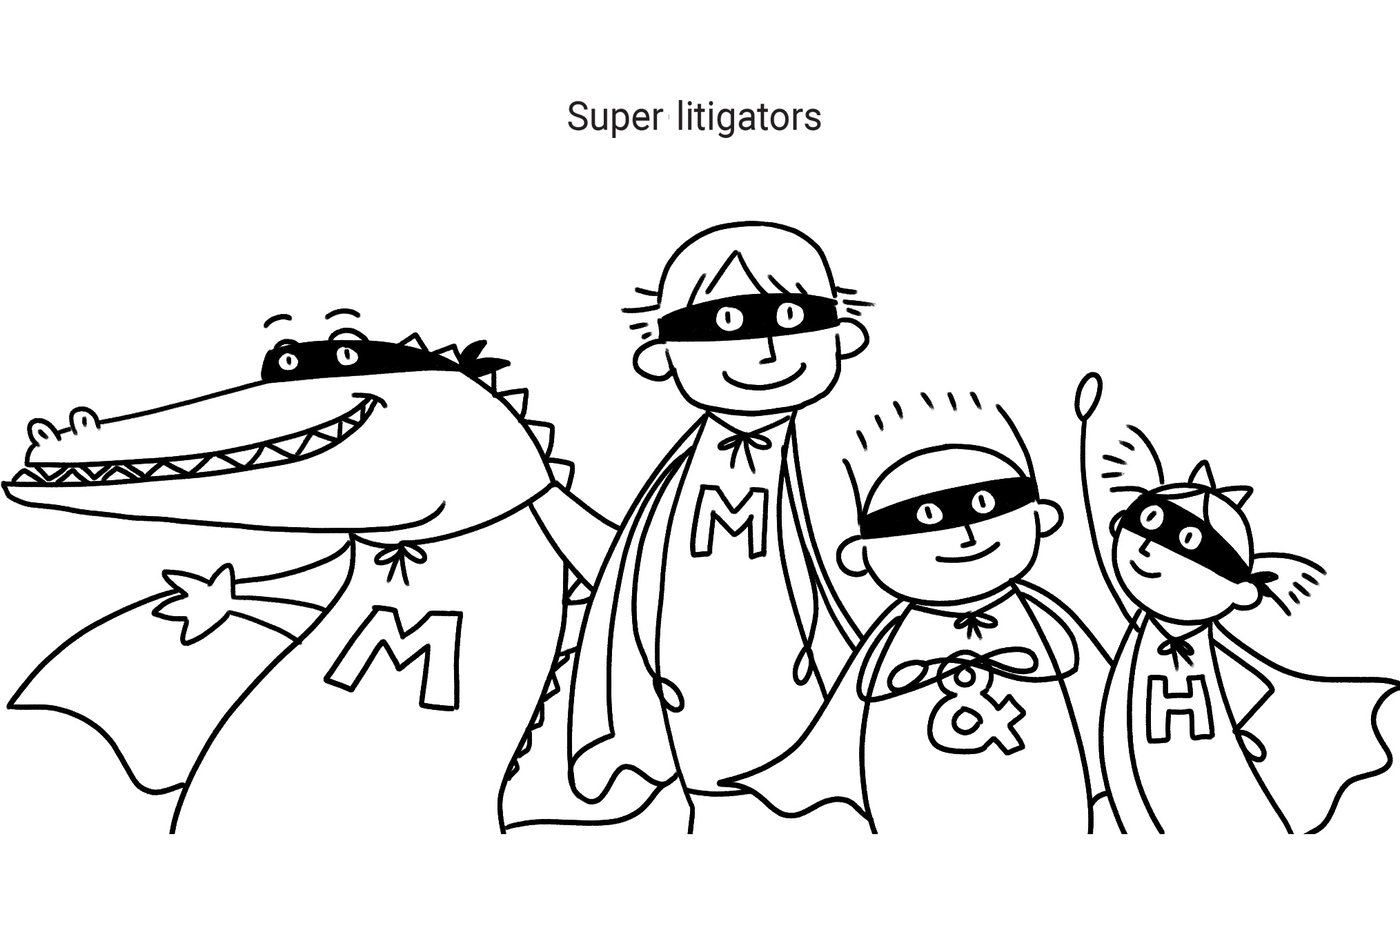 MMH-Super-litigators-3